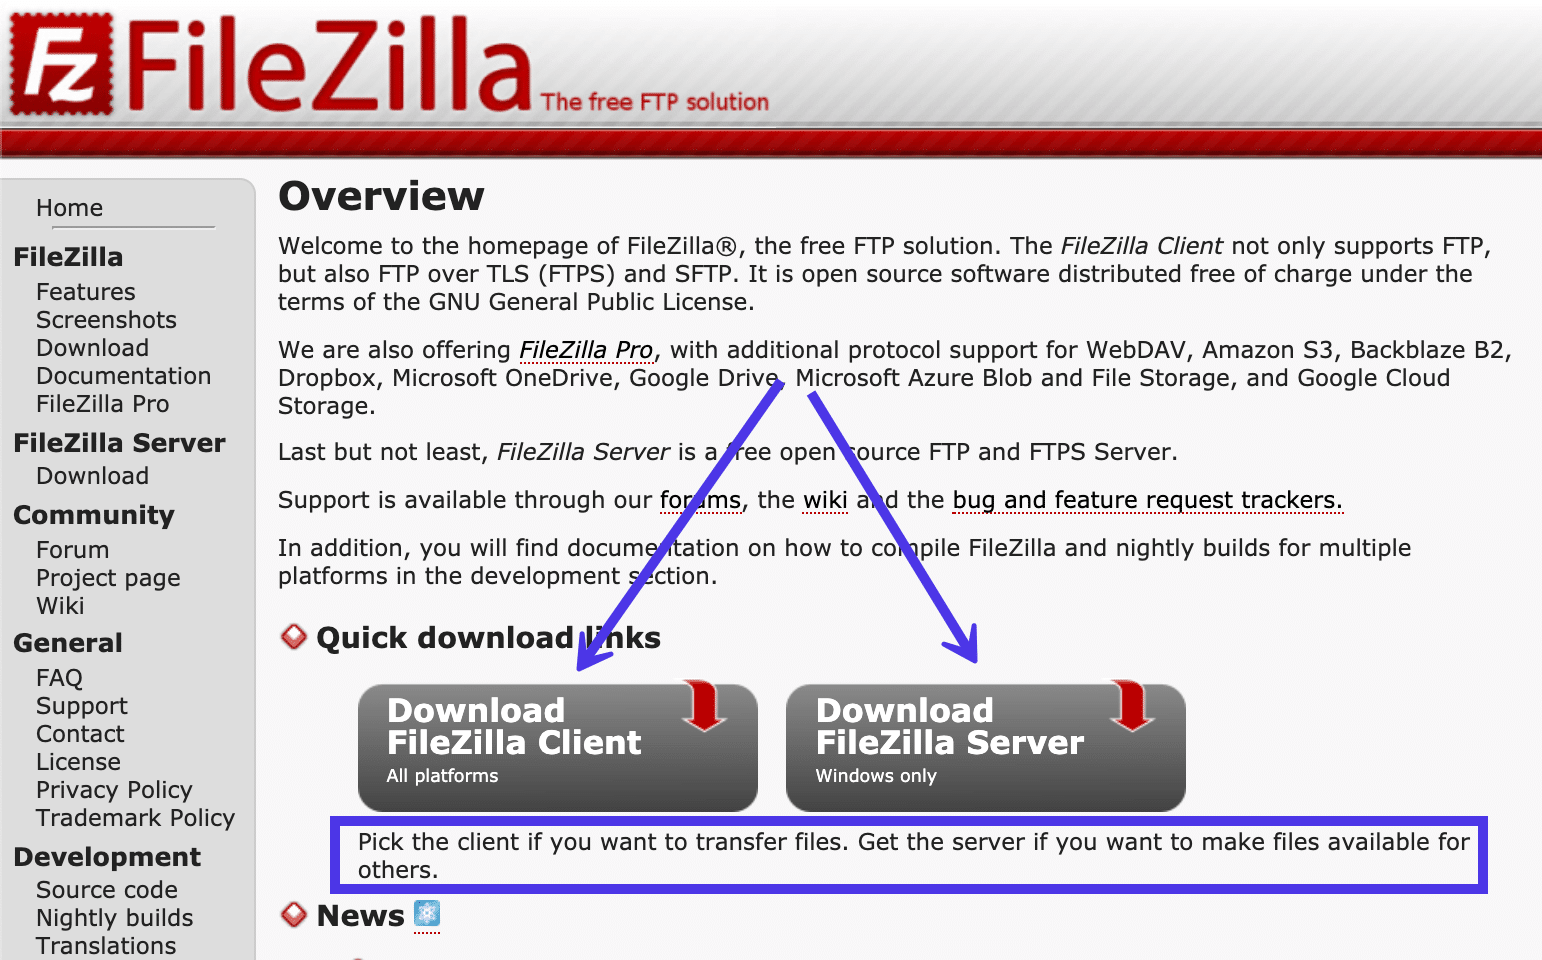 O site FileZilla tinha duas opções de download para o Cliente FileZilla e o FileZilla Server.